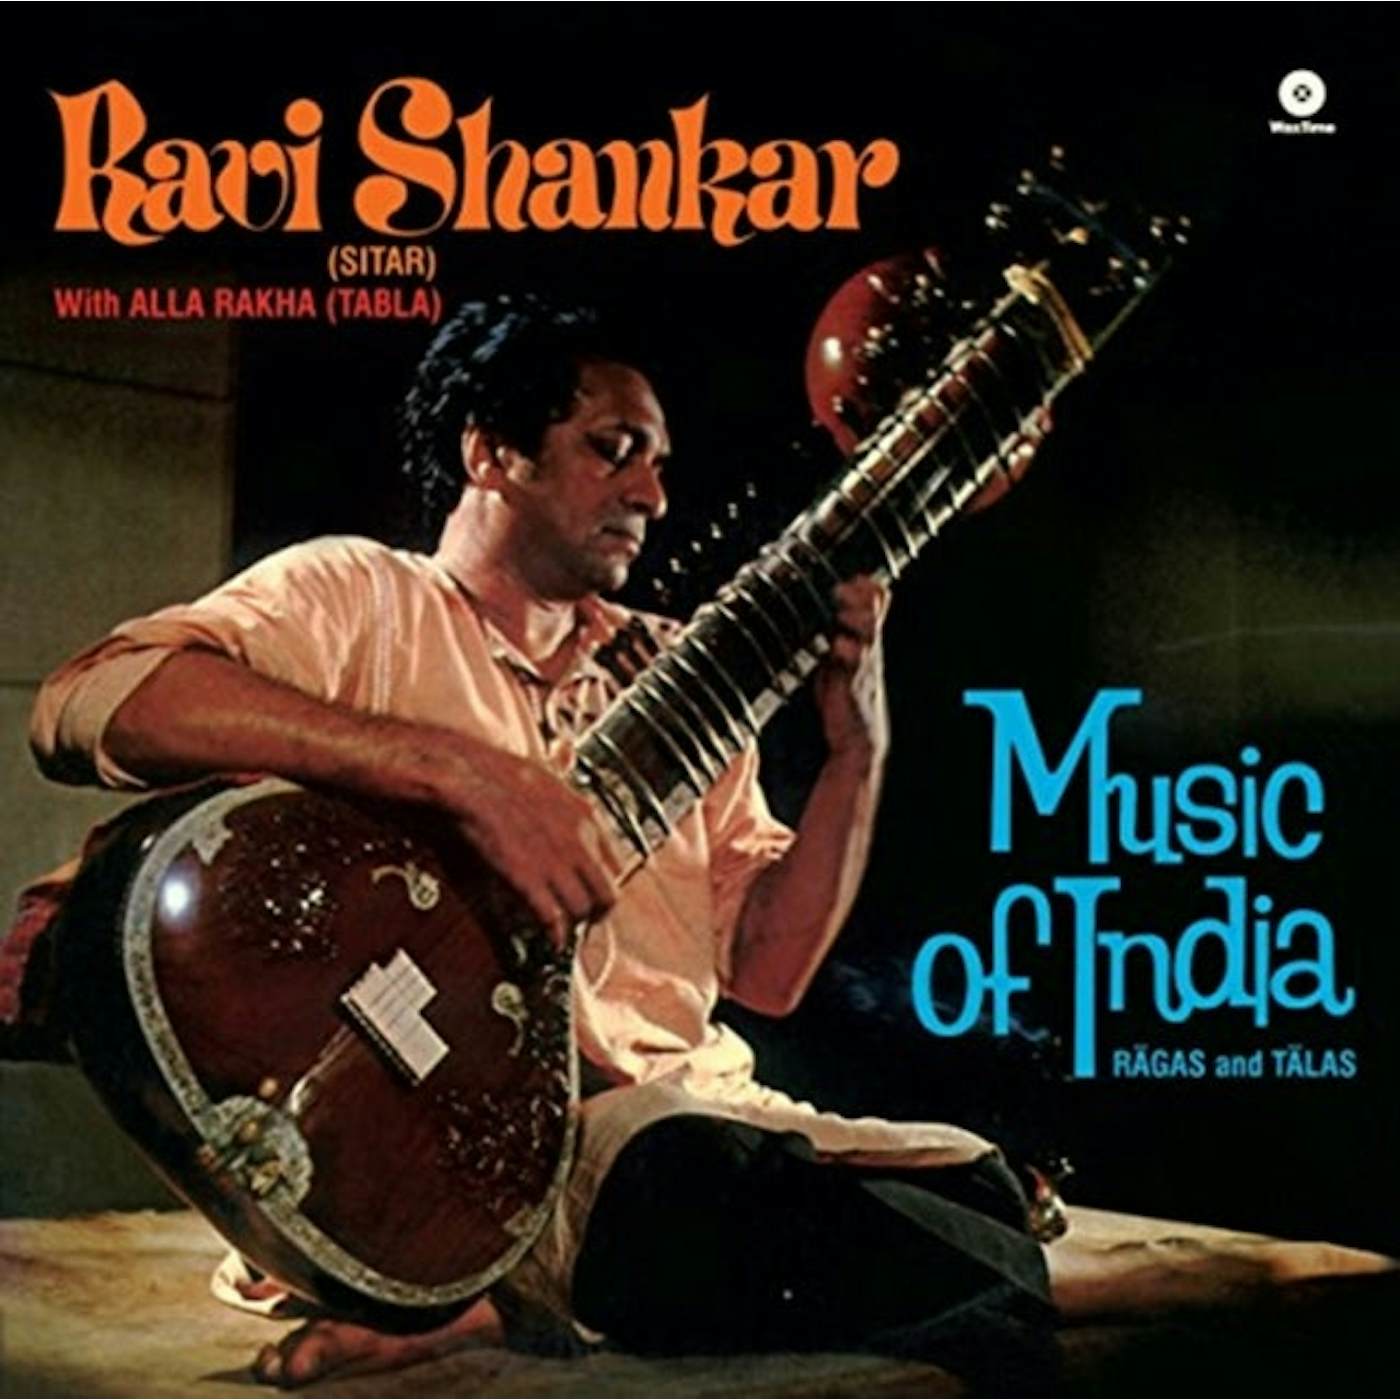 Ravi Shankar LP Vinyl Record - Ragas & Talas